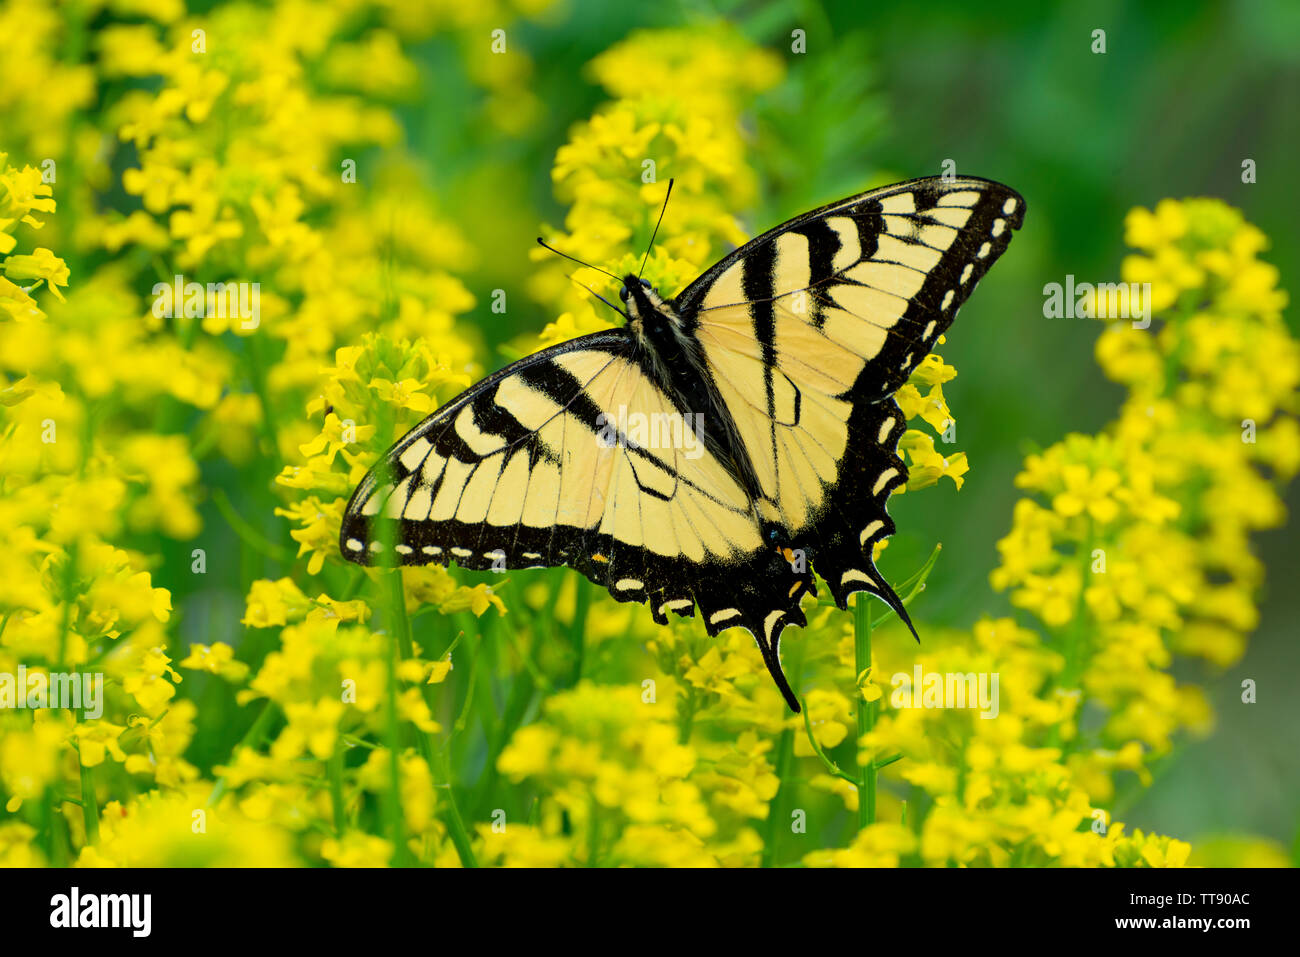 Inquadratura orizzontale di una bella coda forcuta farfalla posata su alcuni minuscoli fiori gialli contro un giallo al di fuori della messa a fuoco lo sfondo in mountai affumicato Foto Stock